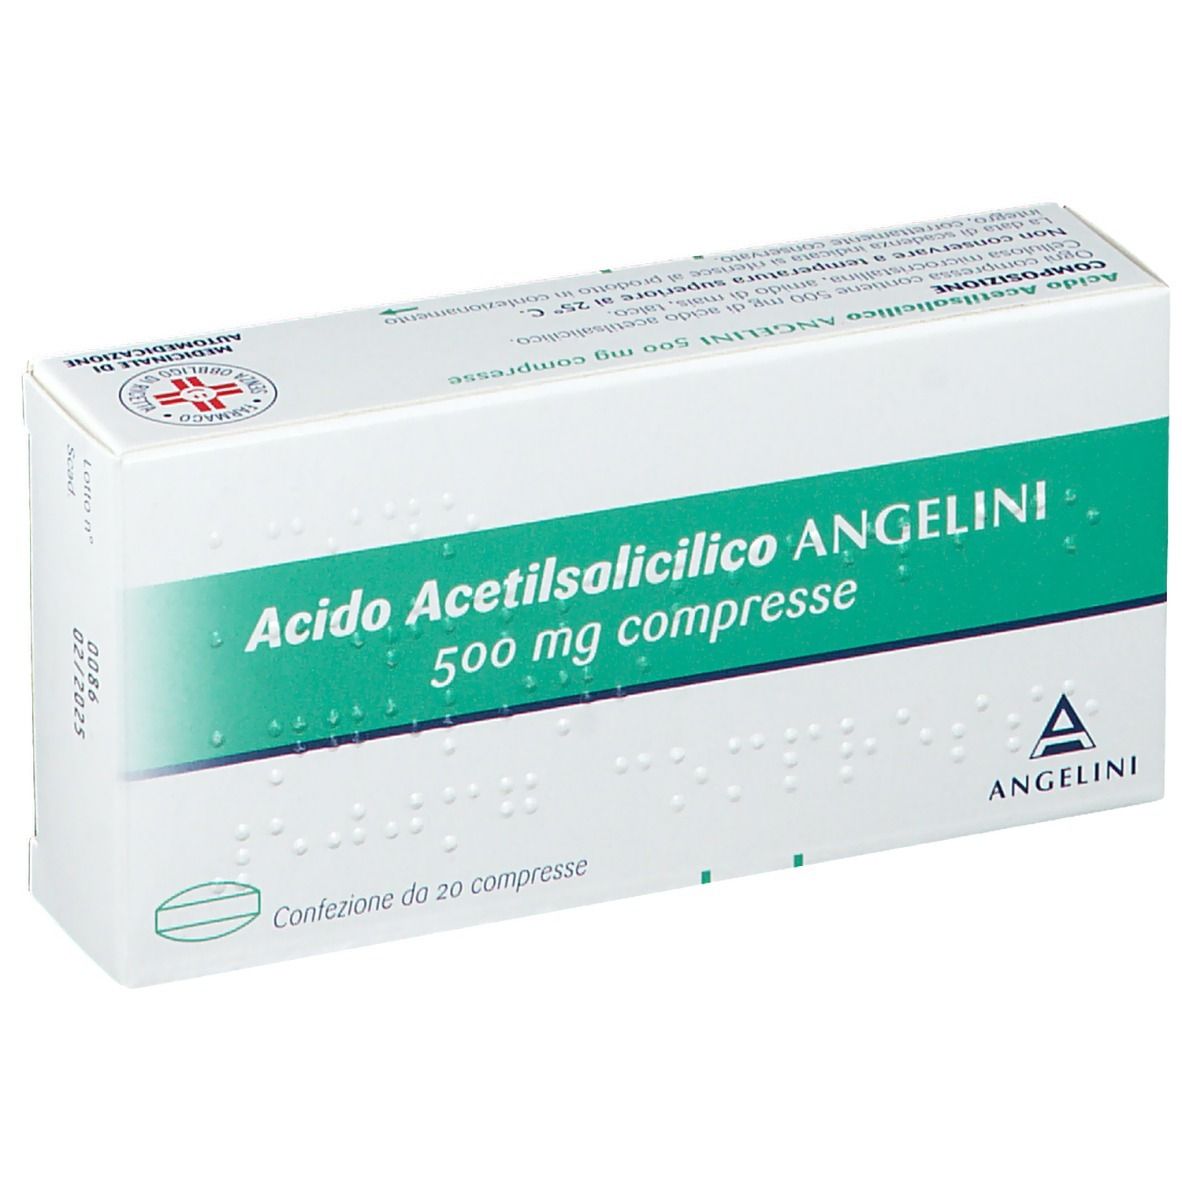  ANGELINI Acido Acetilsalicilico